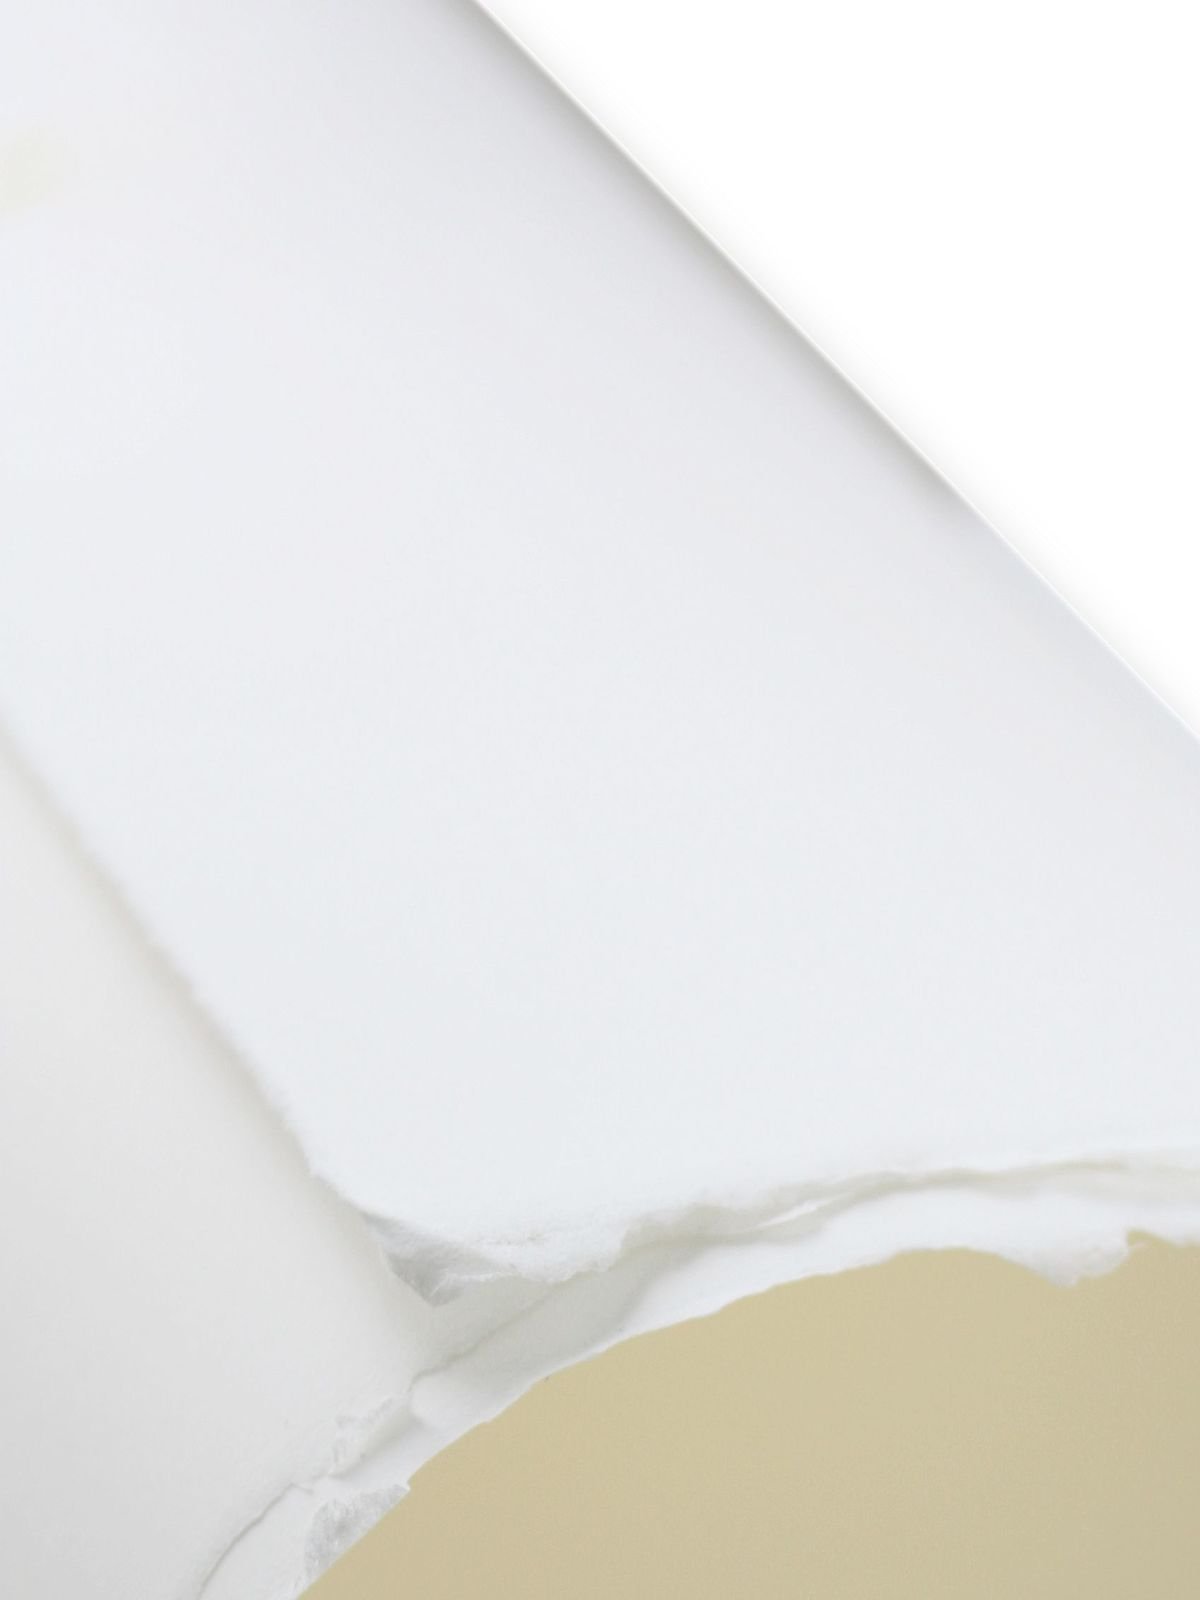 Arches - 88 Silkscreen Paper